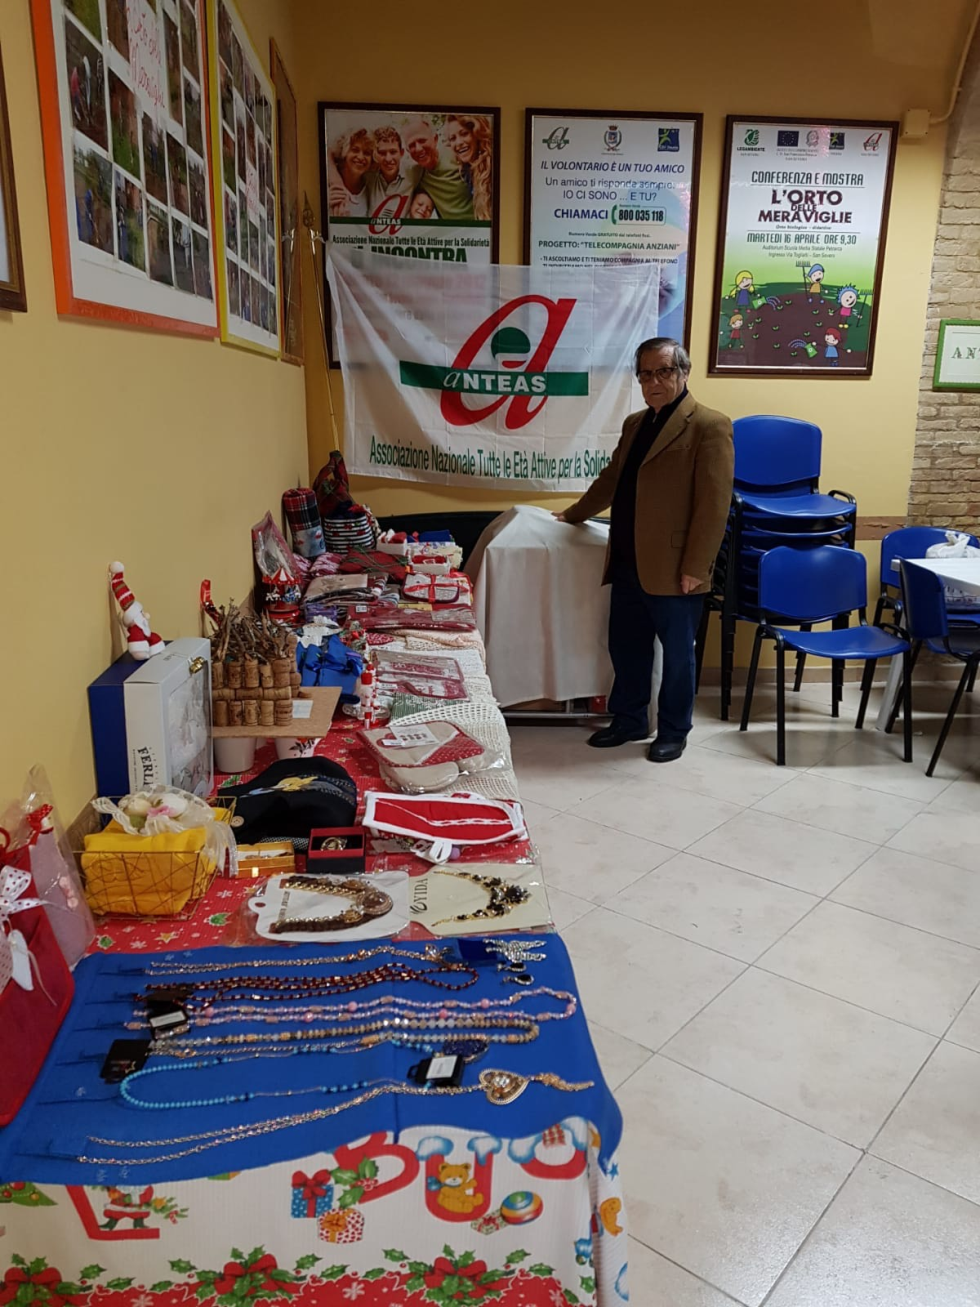 Mercatino di beneficenza con oggetti realizzati dai volontari di Anteas San Severo.